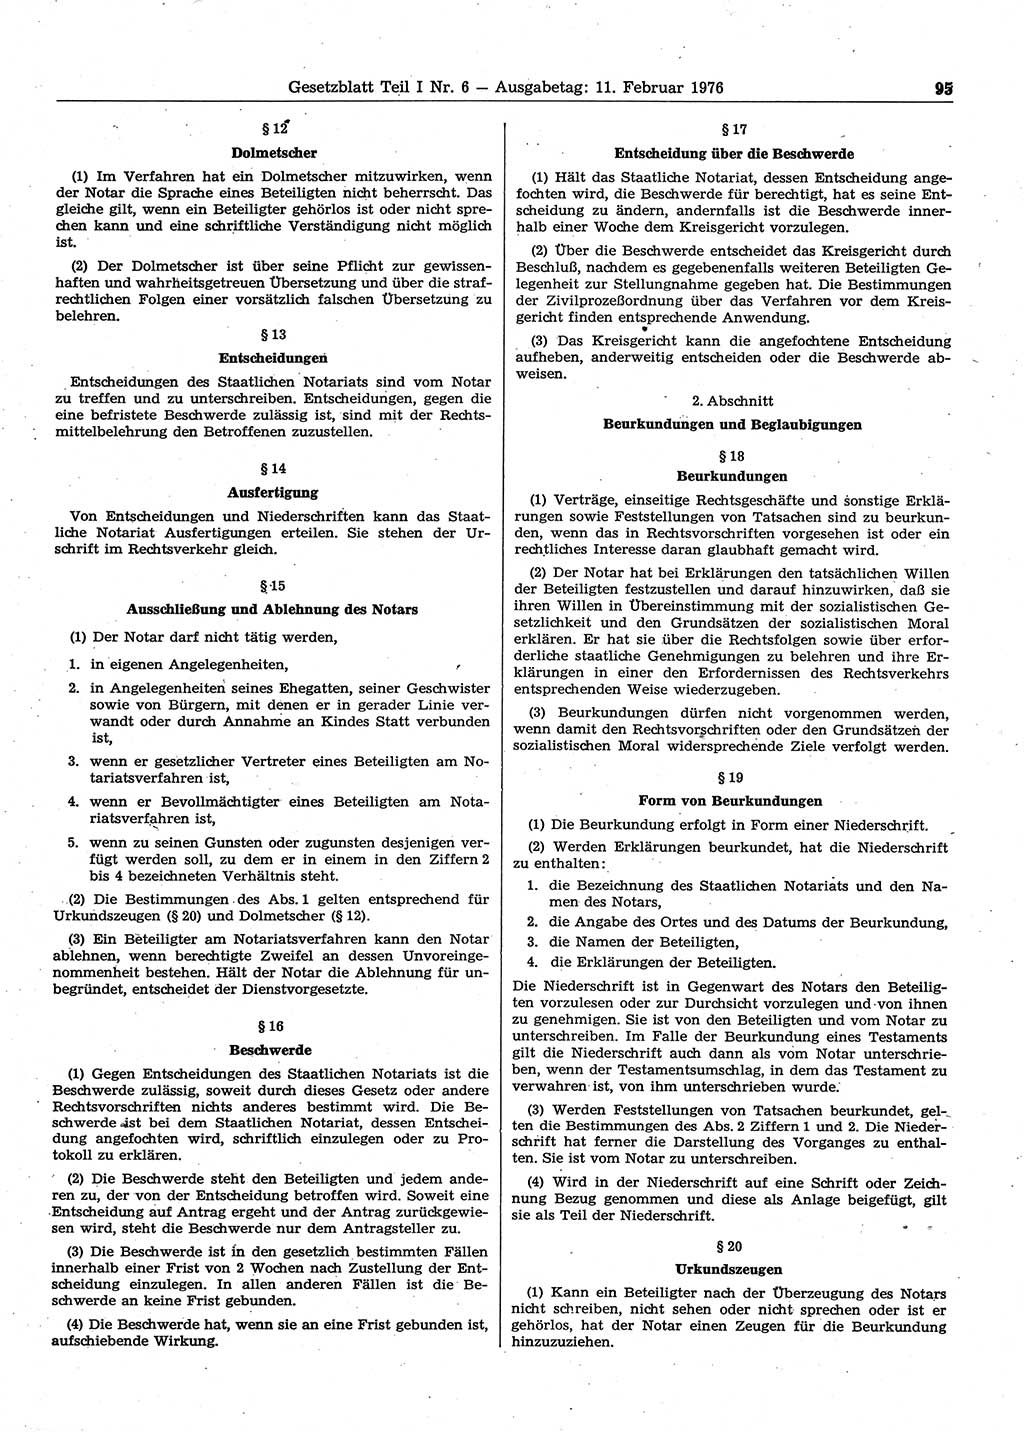 Gesetzblatt (GBl.) der Deutschen Demokratischen Republik (DDR) Teil Ⅰ 1976, Seite 95 (GBl. DDR Ⅰ 1976, S. 95)